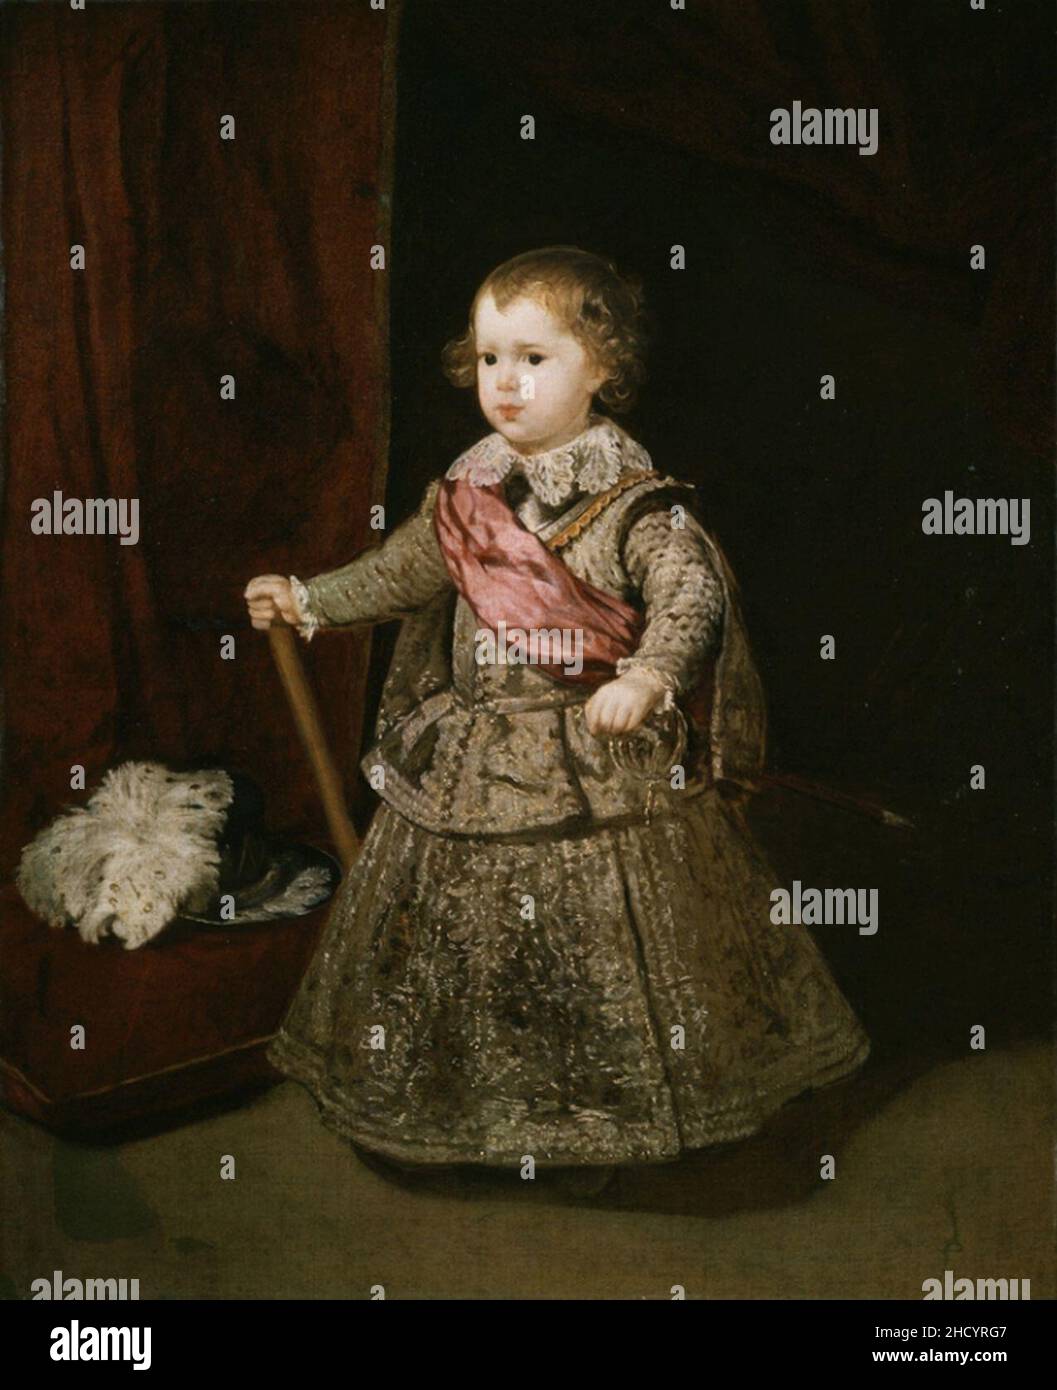 Baroque : Portrait of Infant Balthasar Charles (1629-1646) par Velazquez,  Diego (1599-1660), c. 1640. Oil on canvas